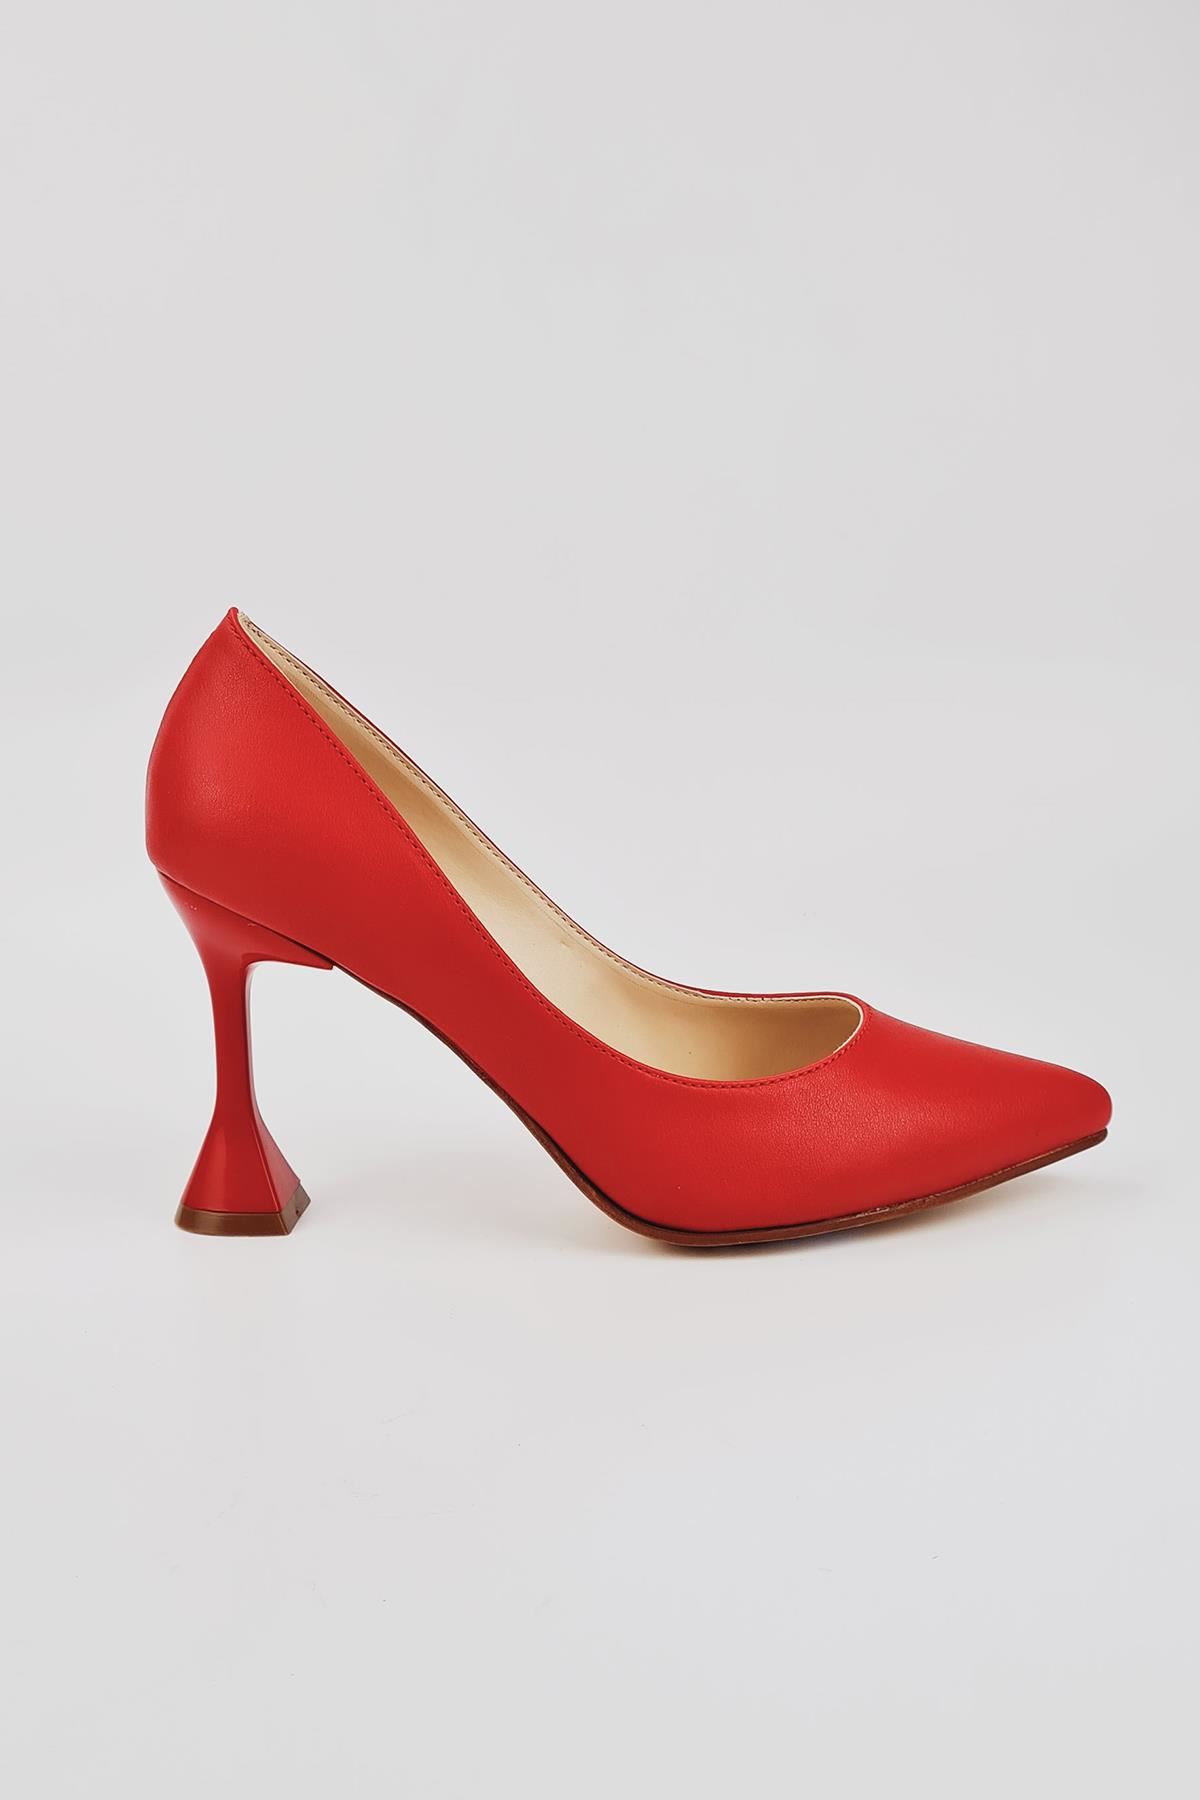 Beliz Kadın Stiletto Topuklu Ayakkabı Kırmızı Cilt